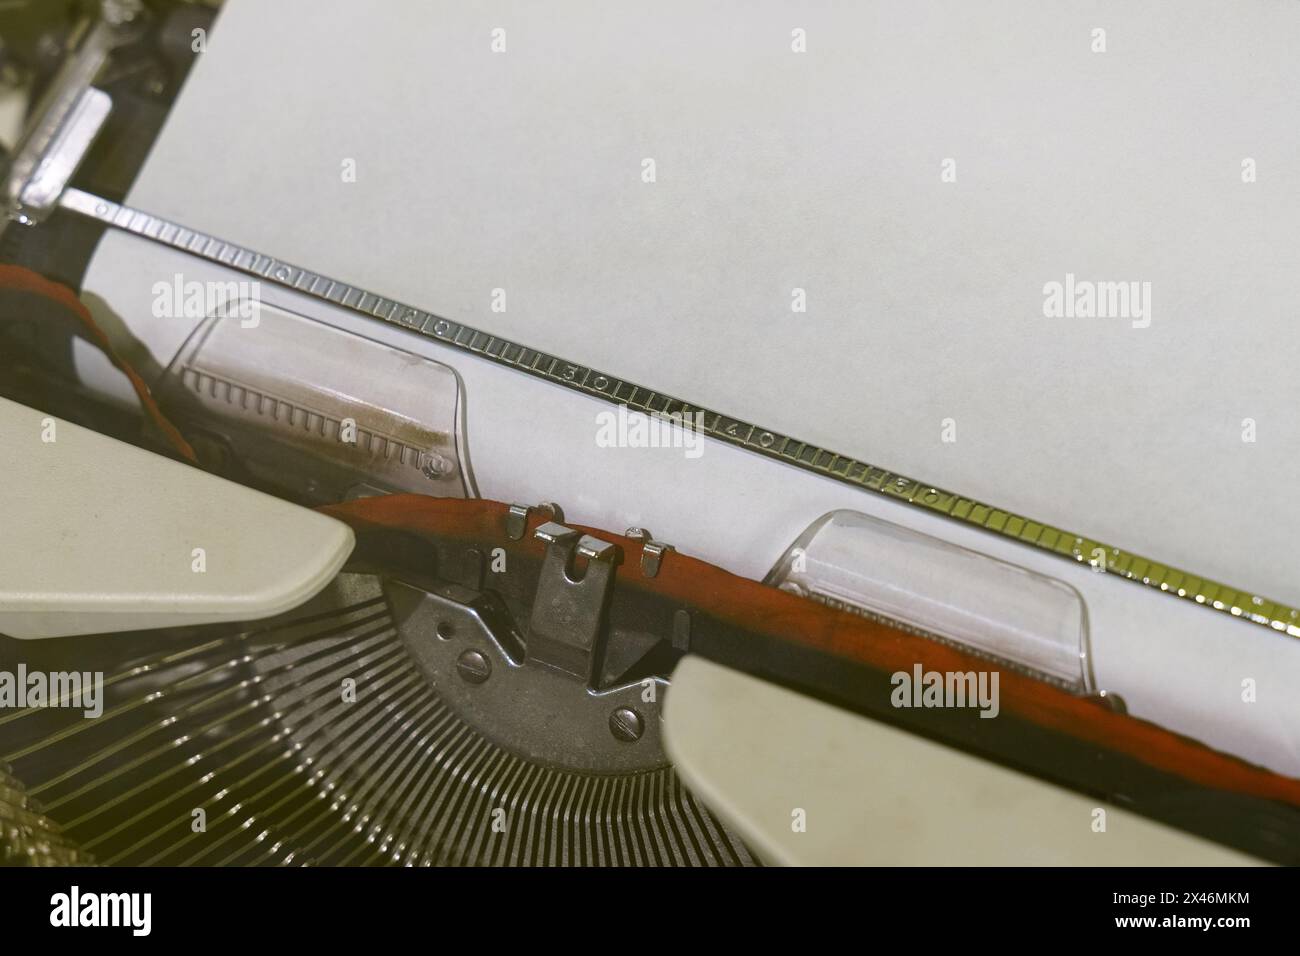 Eine detaillierte Ansicht einer altmodischen Schreibmaschine mit Papier, die das klassische Design und die Funktionalität dieses Schreibgeräts erfasst. Stockfoto